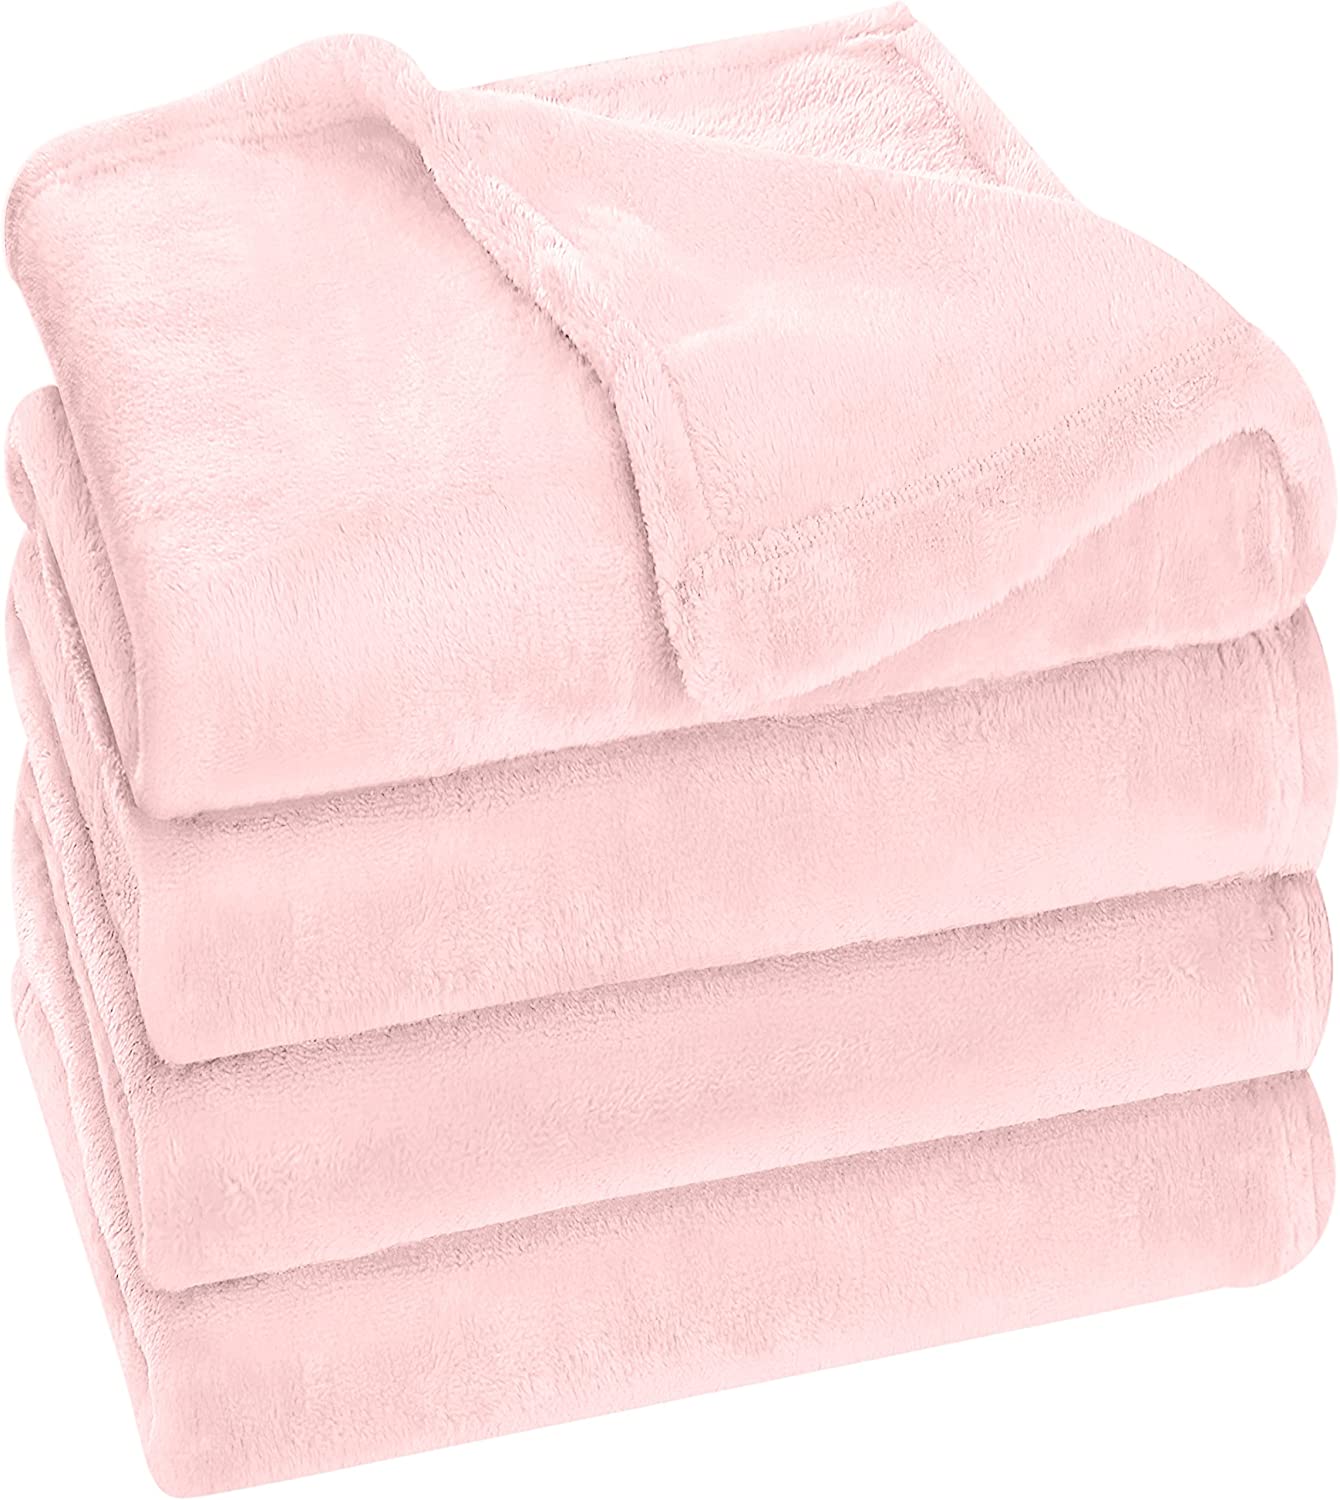 Utopia Bedding Fleece Blanket Queen Size Rose Pink 300GSM Luxury